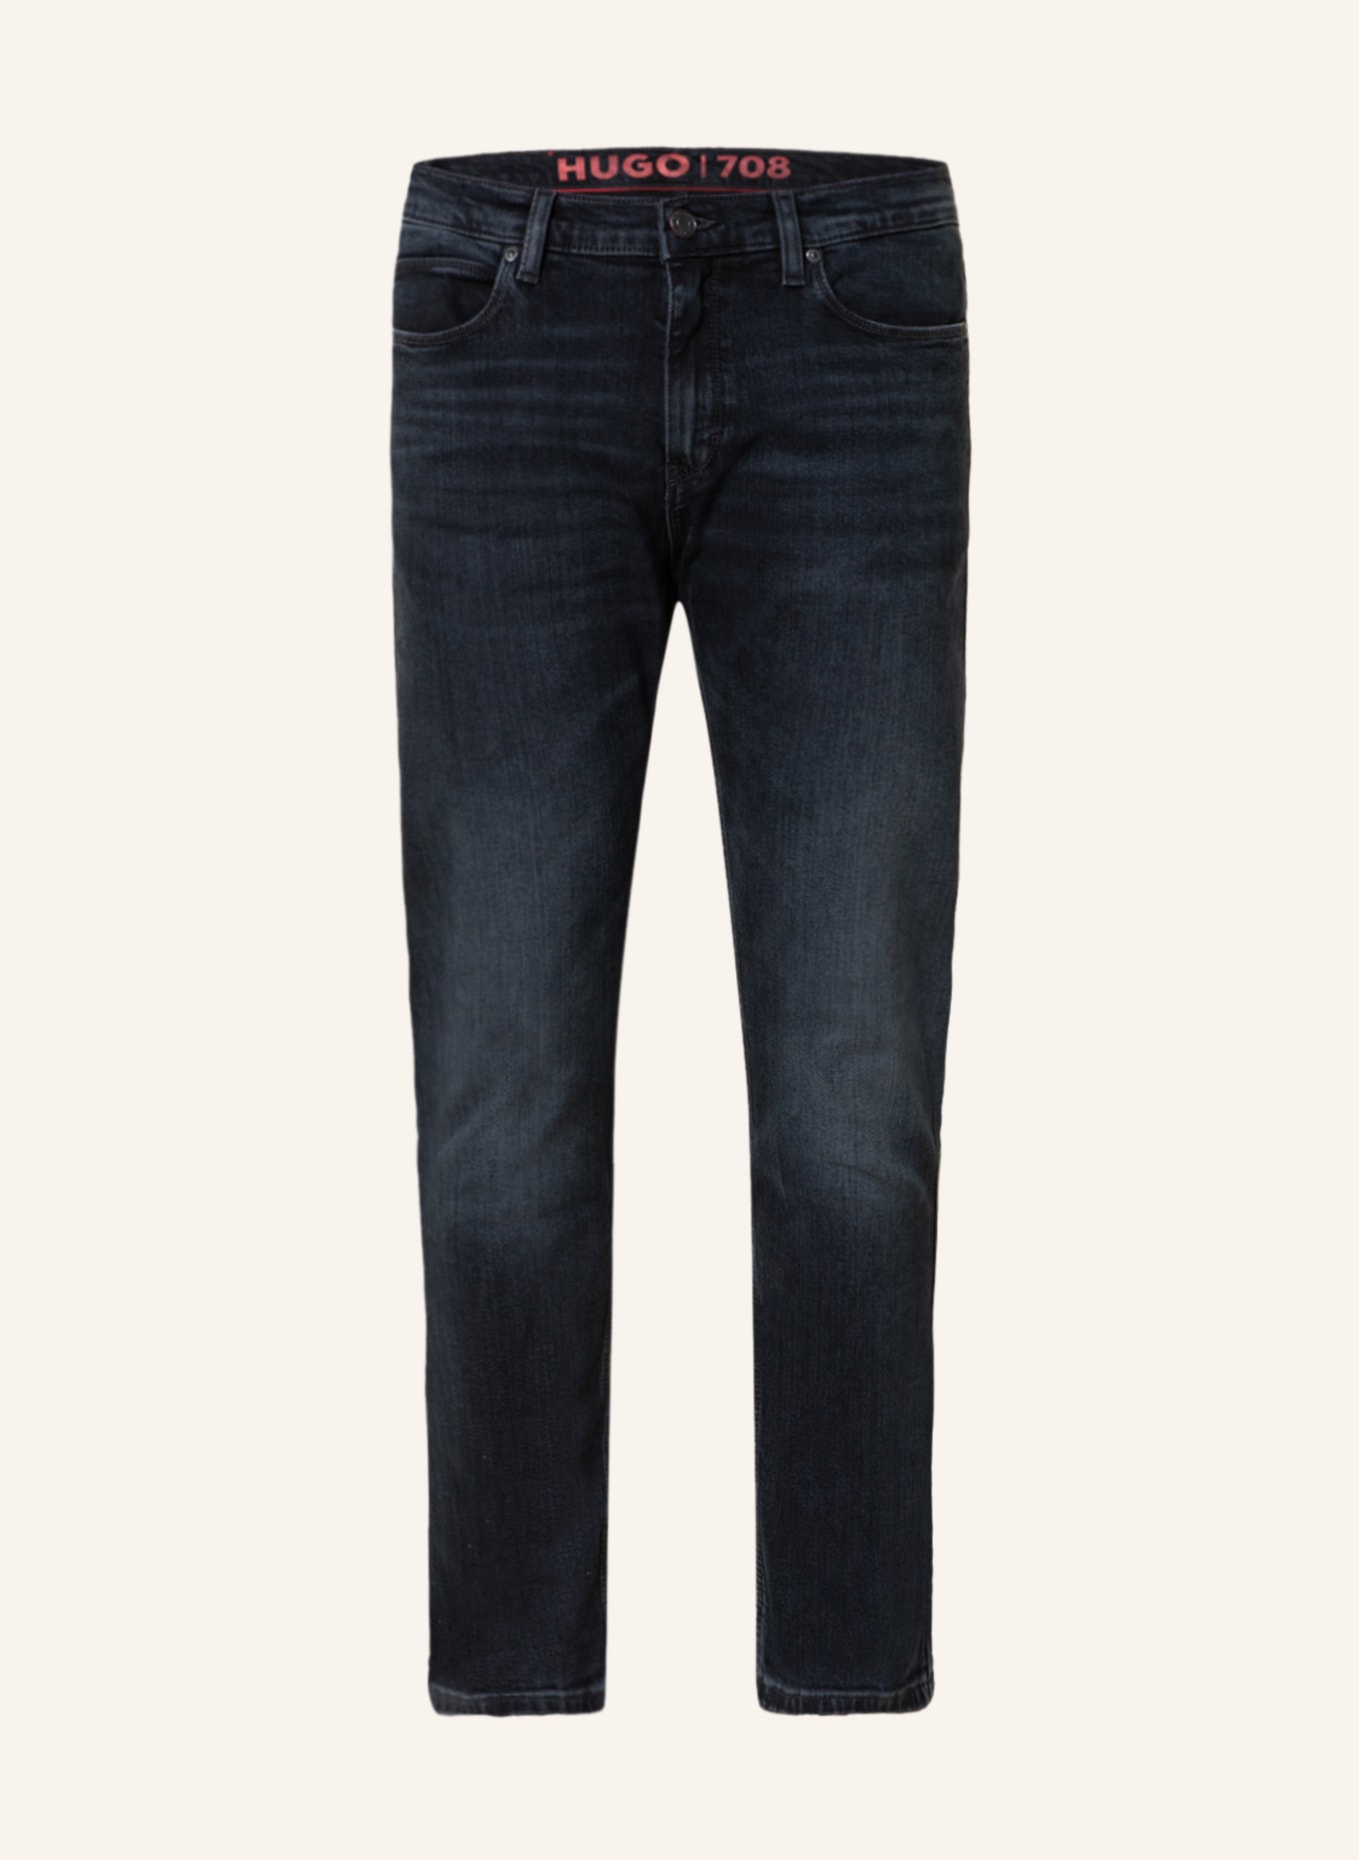 HUGO Jeans HUGO 708 slim fit, Color: 410 NAVY (Image 1)